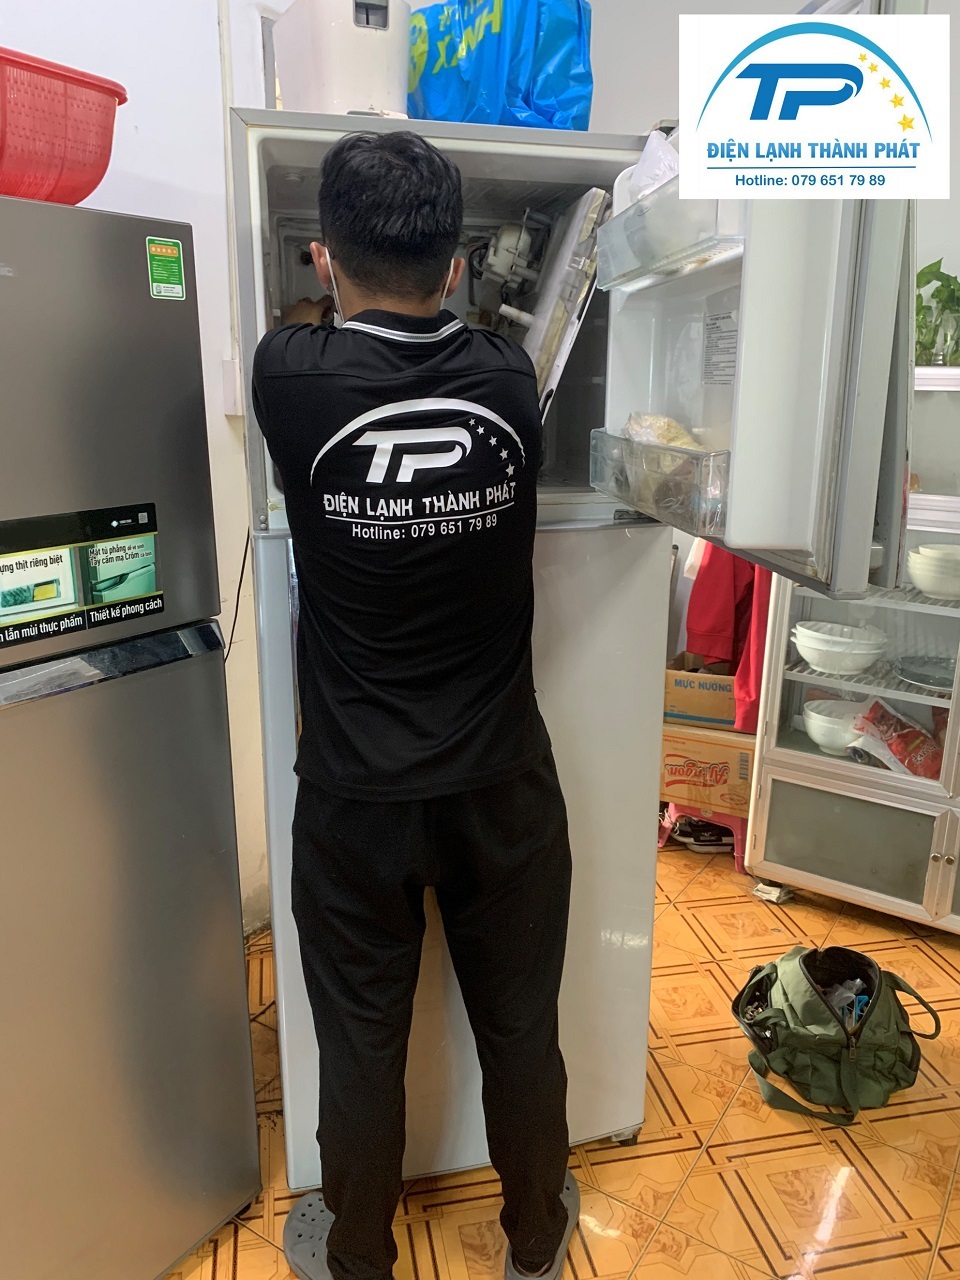 Điện lạnh Thành Phát - Đơn vị cung cấp dịch vụ vệ sinh tủ lạnh chất lượng hàng đầu.